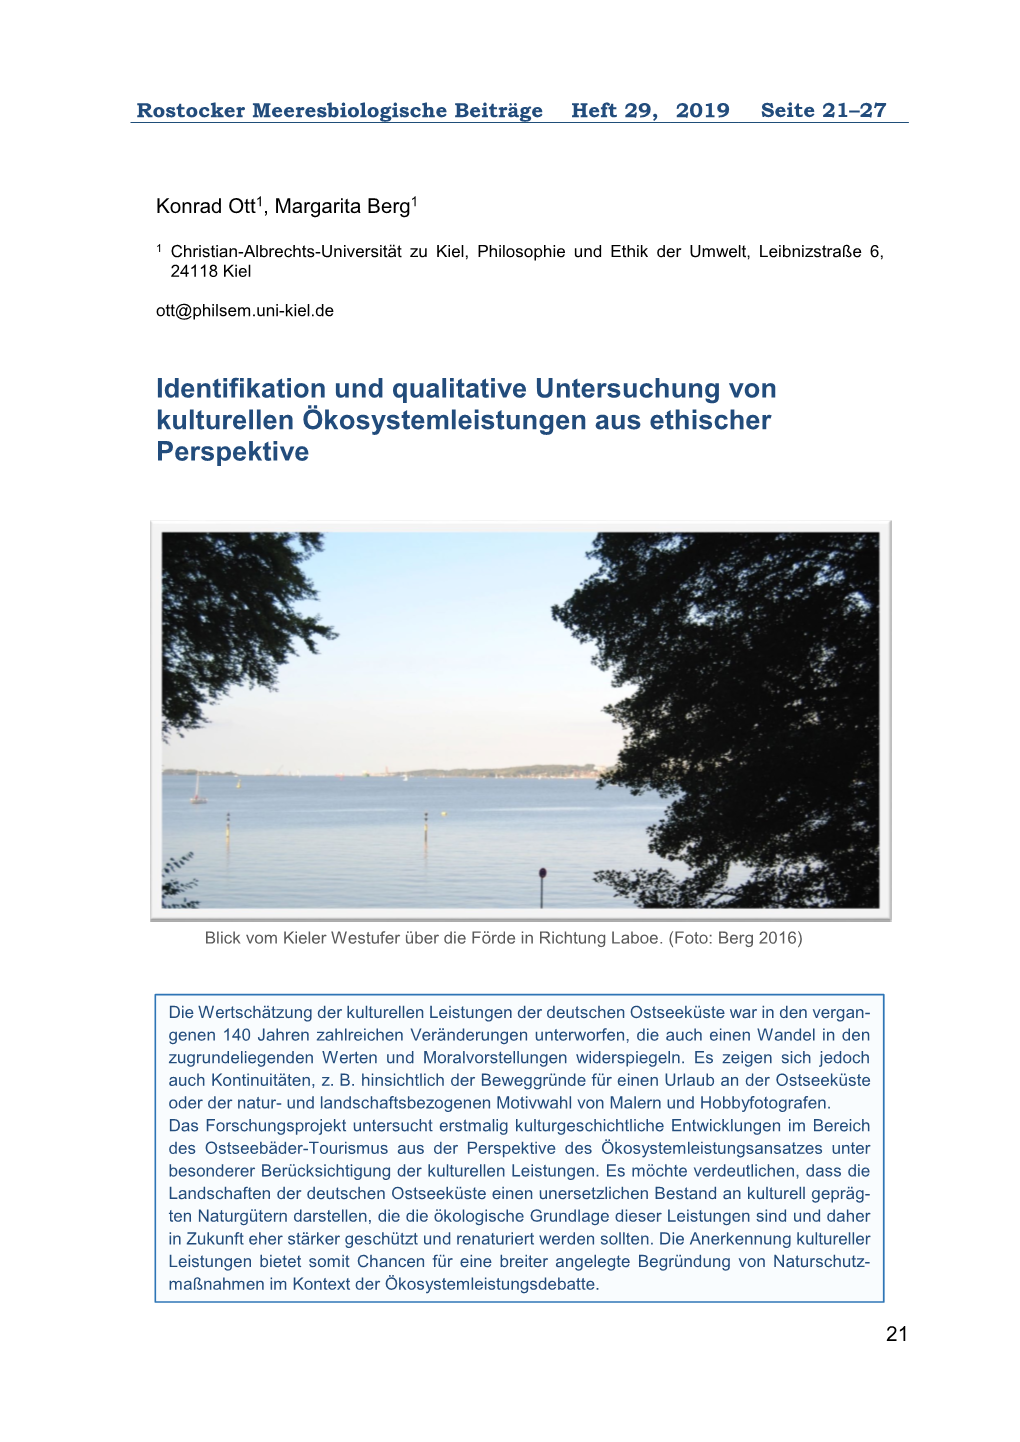 Identifikation Und Qualitative Untersuchung Von Kulturellen Ökosystemleistungen Aus Ethischer Perspektive